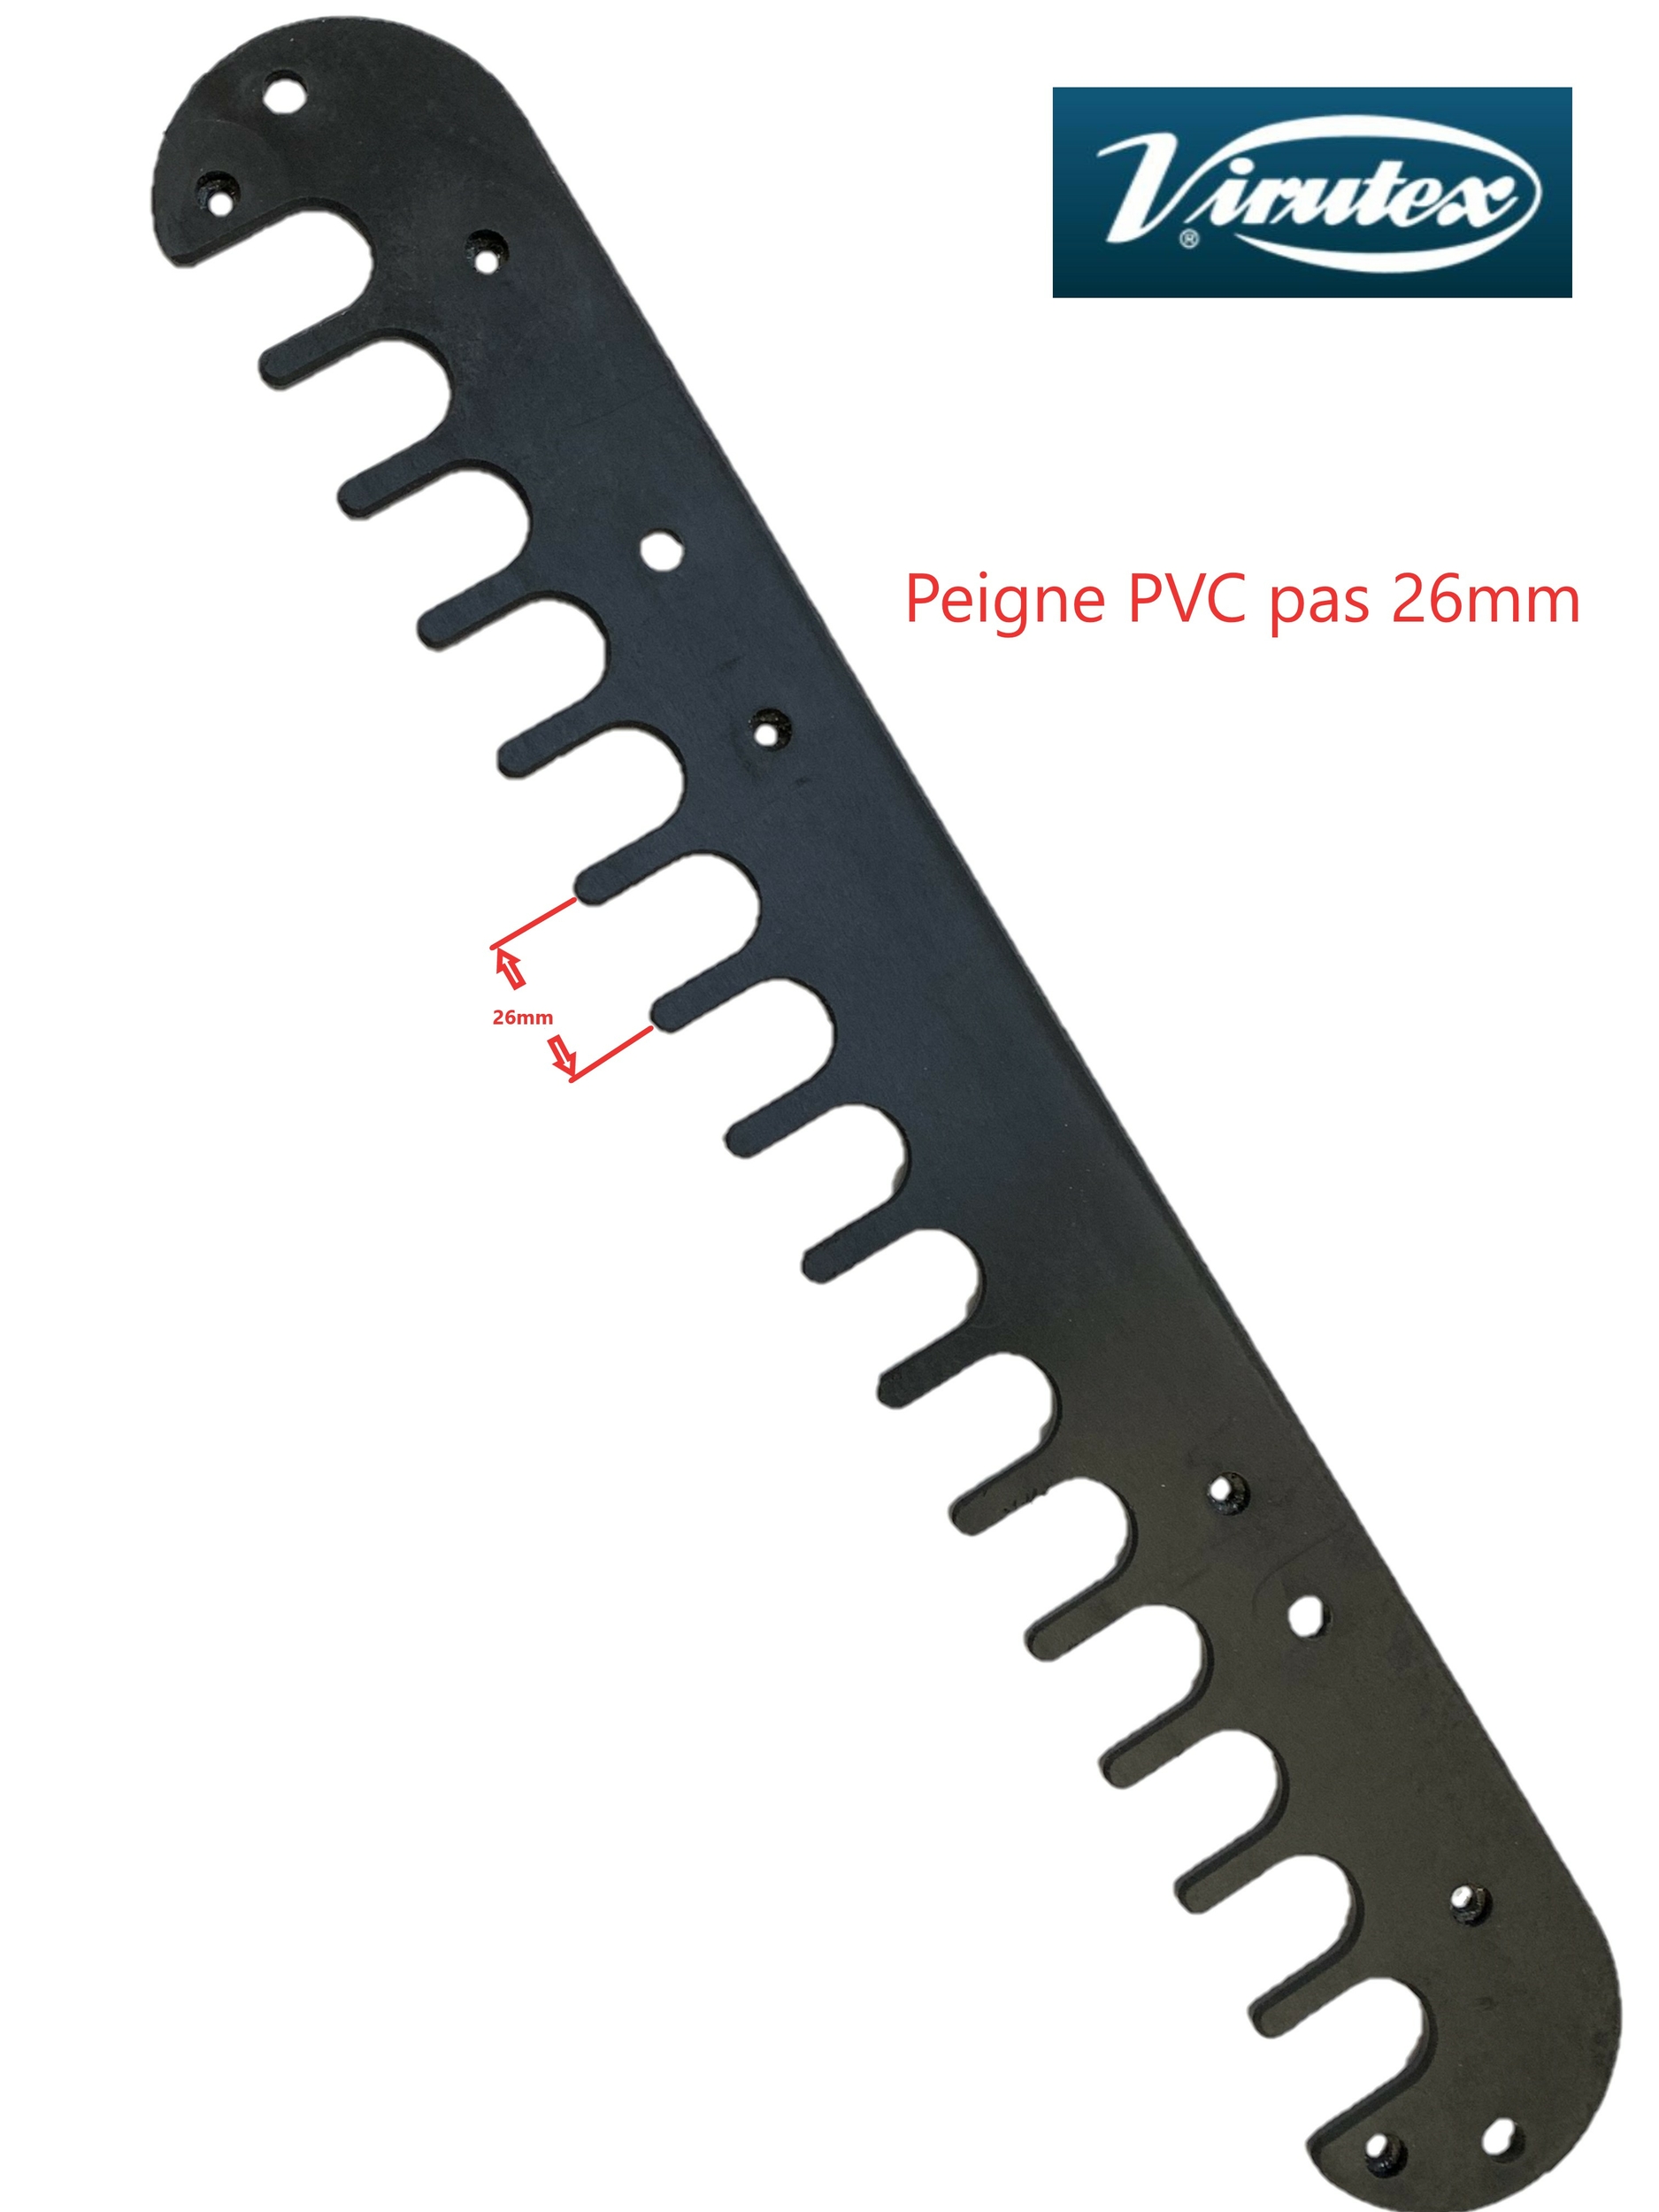 Peigne PVC gabarit queue d\'aronde pas 26mm pour PL11 Virutex